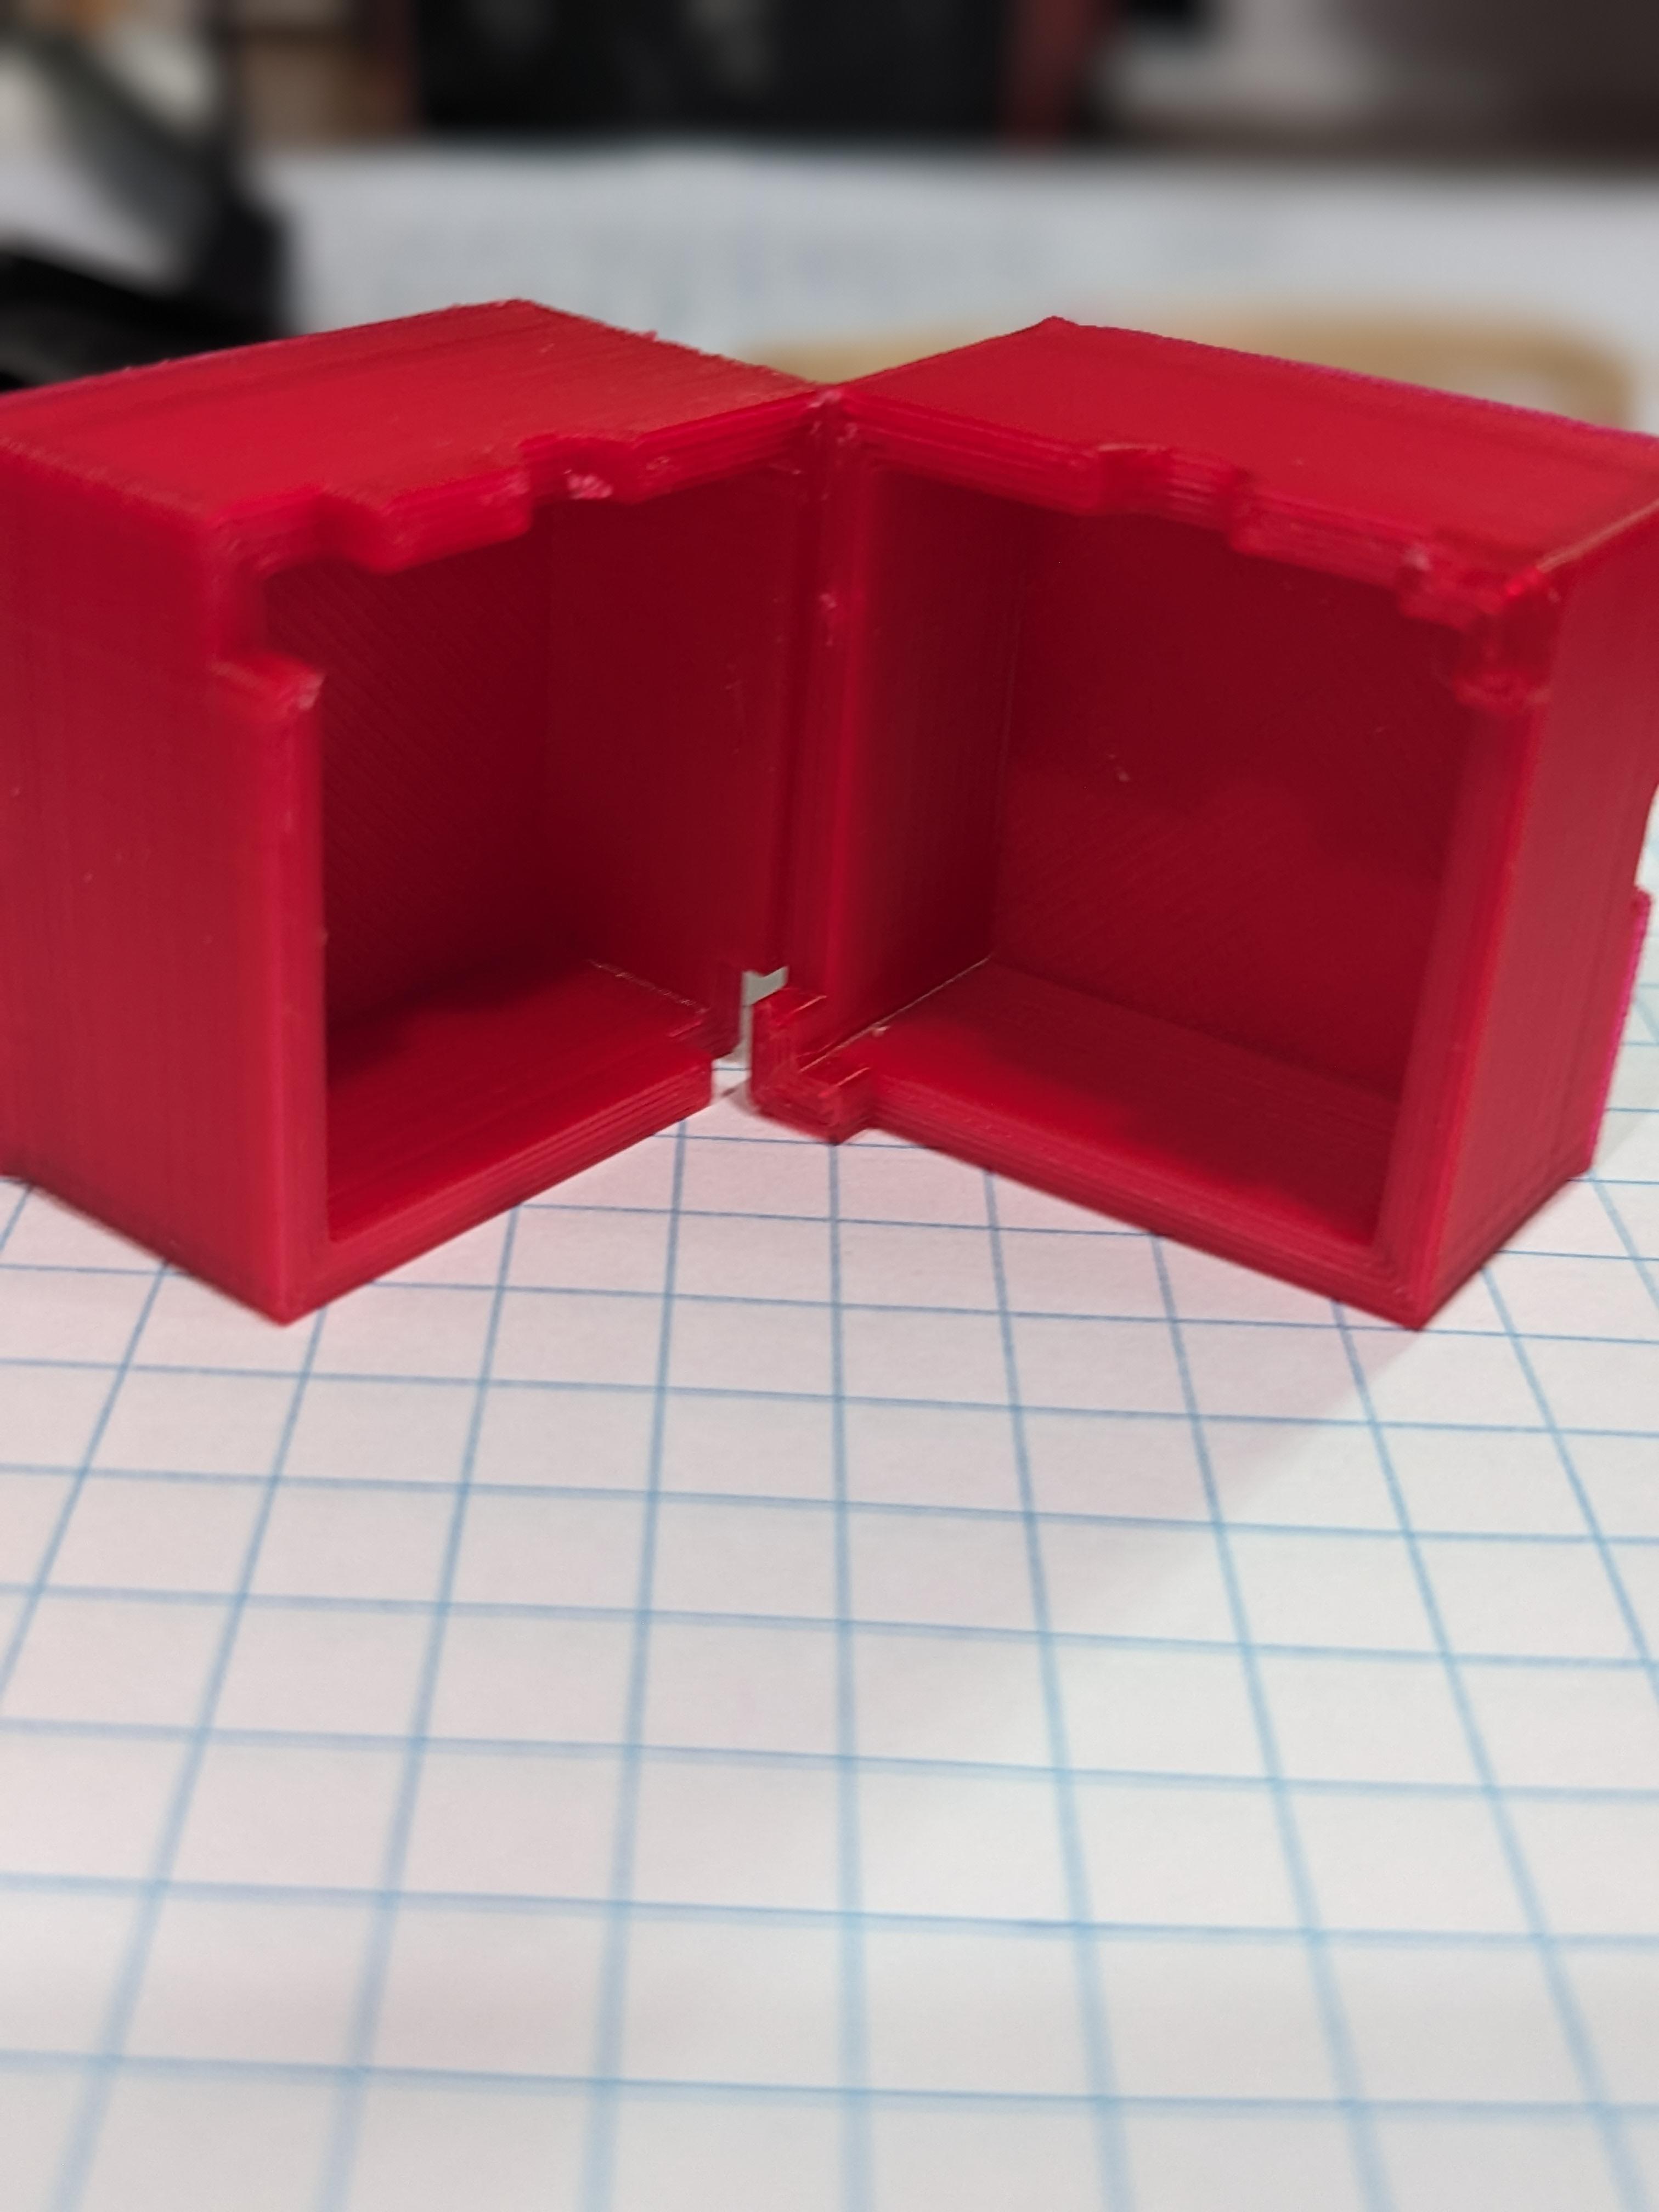 Cube Tomato Mold v.3 3d model